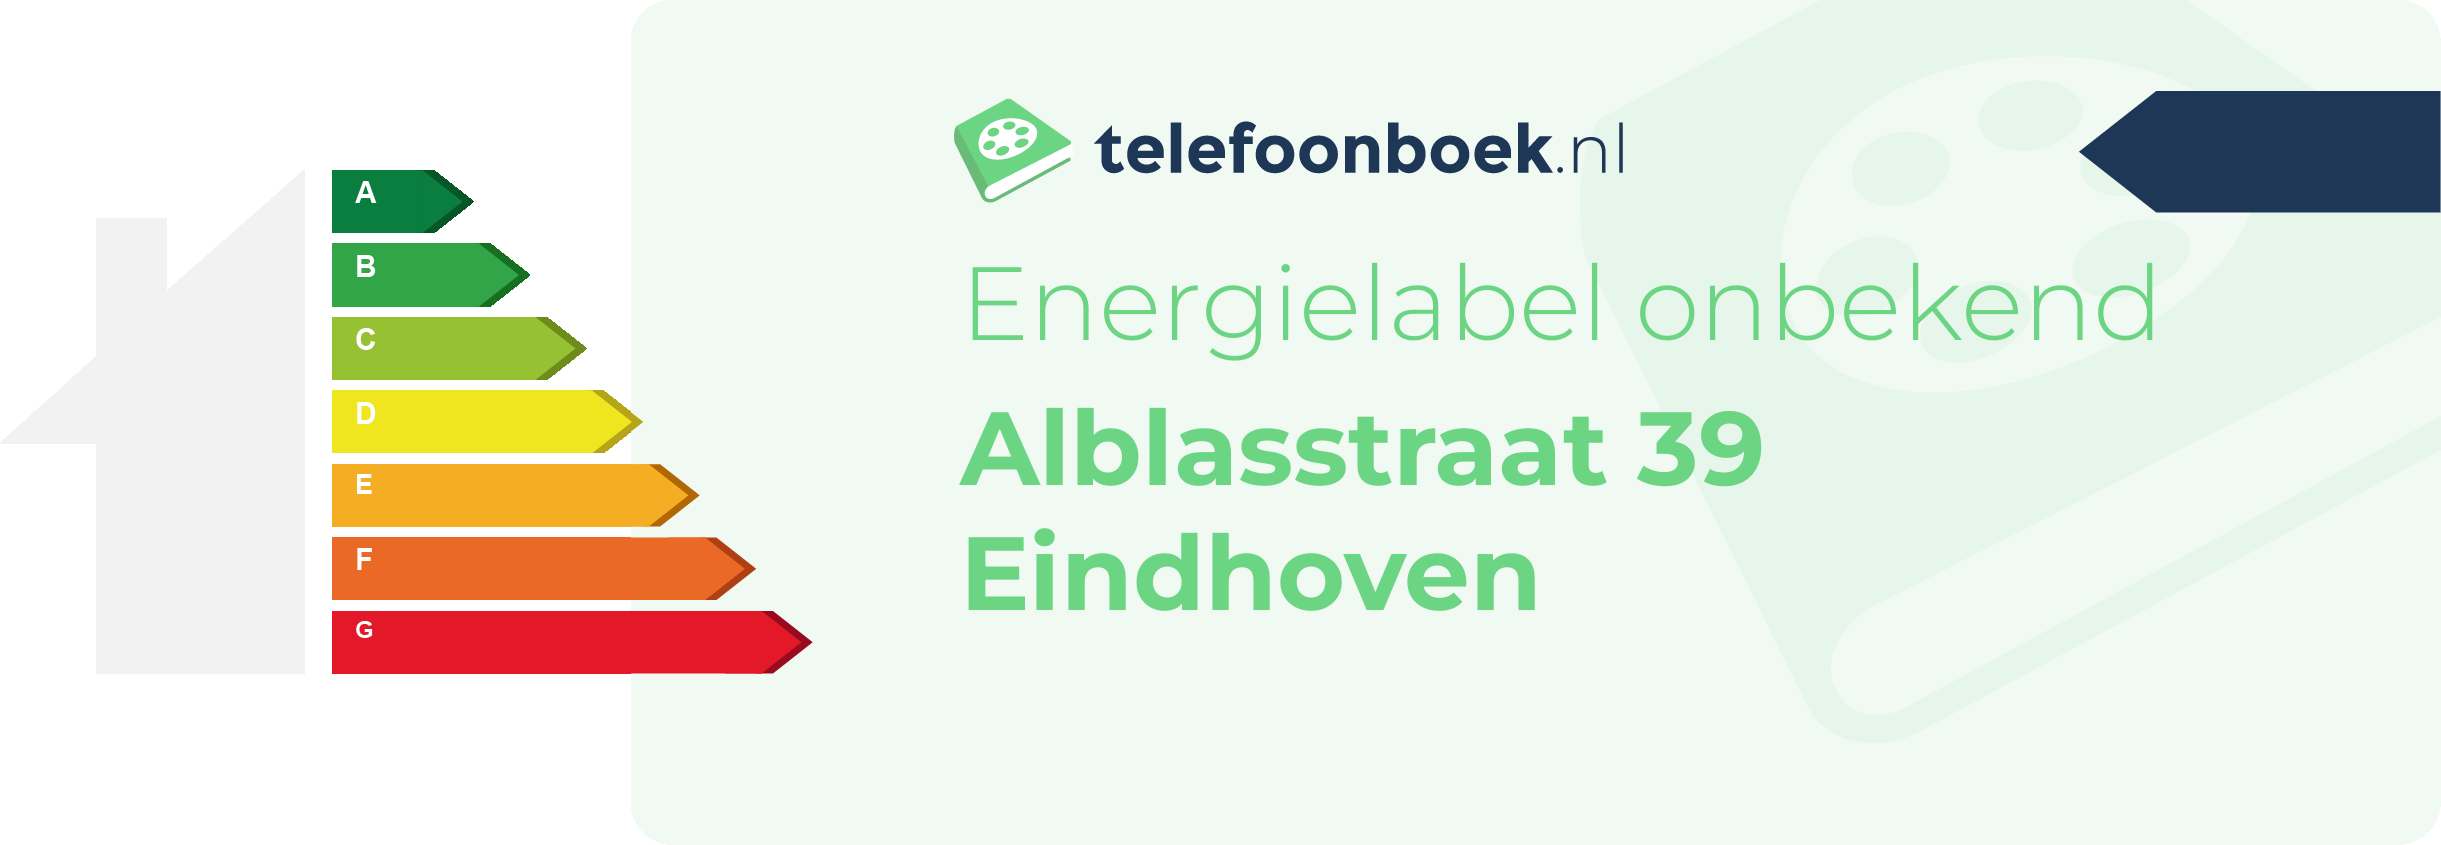 Energielabel Alblasstraat 39 Eindhoven